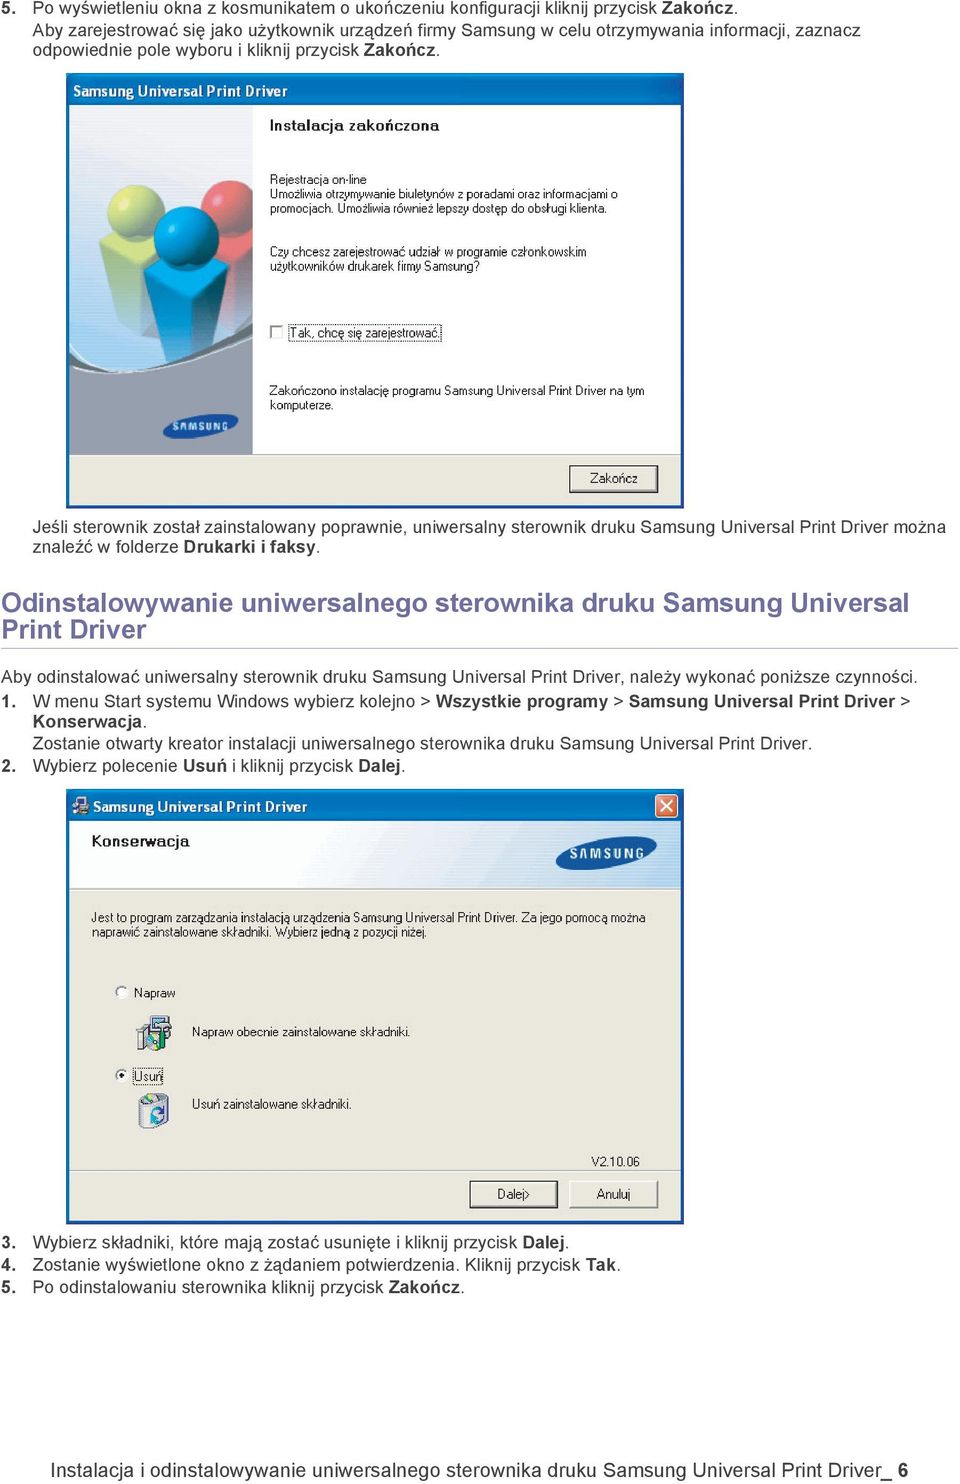 Jeśli sterownik został zainstalowany poprawnie, uniwersalny sterownik druku Samsung Universal Print Driver można znaleźć w folderze Drukarki i faksy.